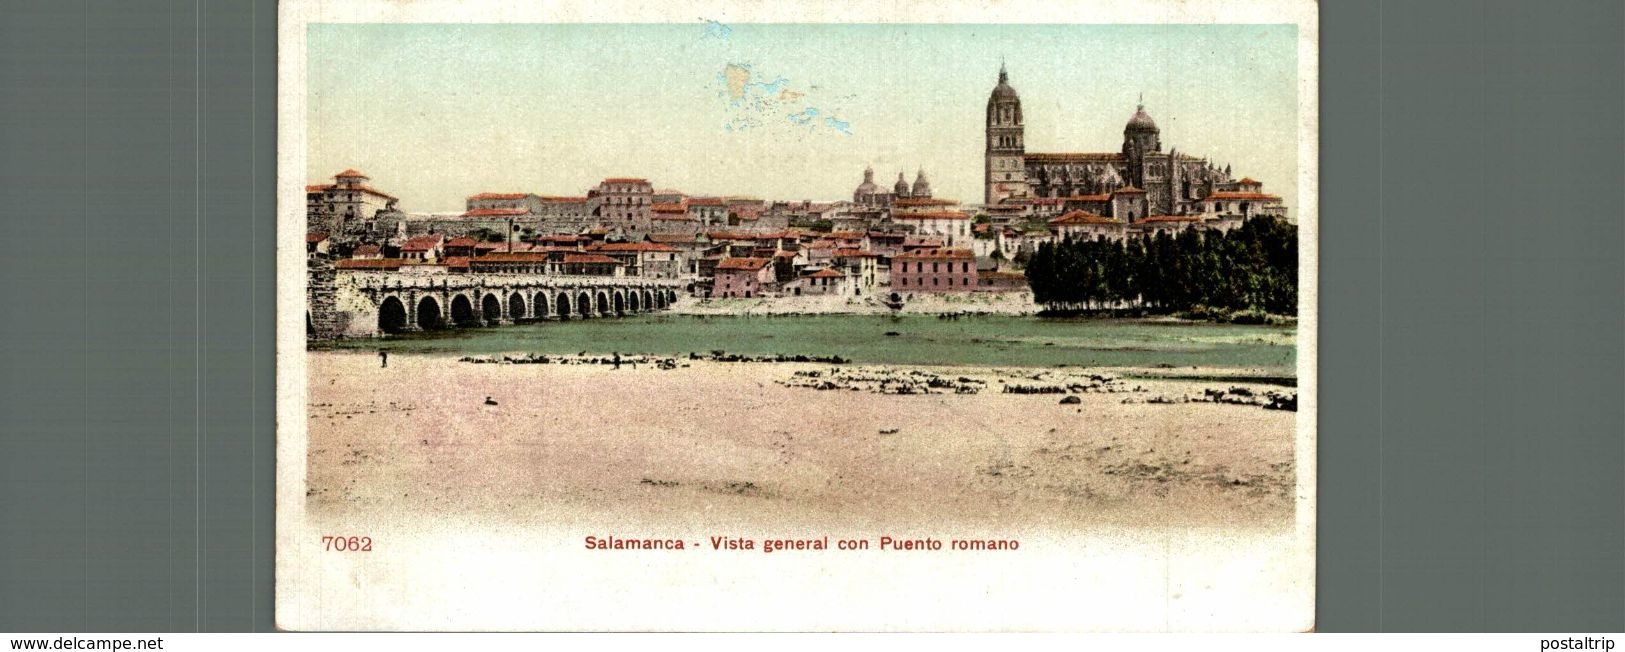 SALAMANCA, VISTA GENERAL CON PUENTE ROMANO - Salamanca